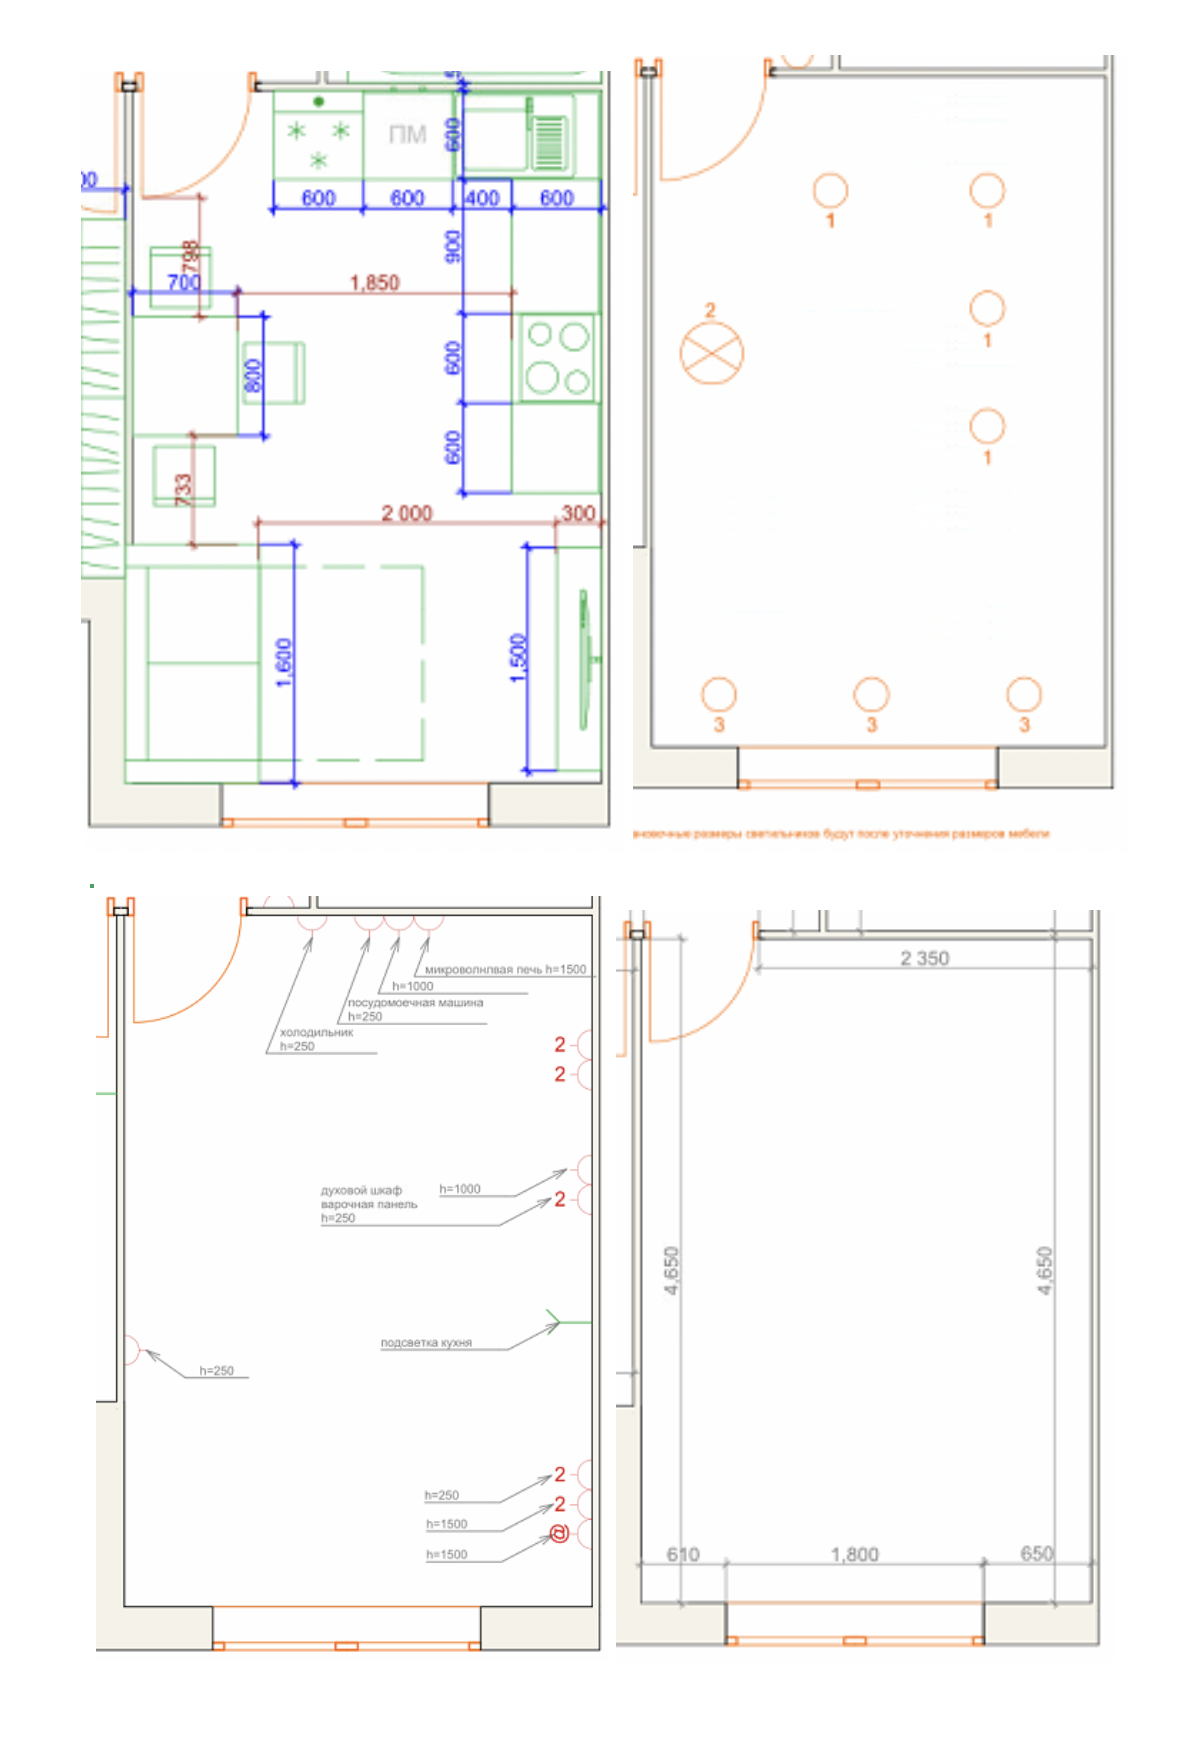 Это лишь несколько страниц из большого pdf-файла с проектом квартиры: каждая страница посвящена определенному аспекту. Здесь показано, как будет стоять мебель, какой план освещения и где розетки на кухне. Такие же планы были для всех комнат, прихожей, ванной, балкона